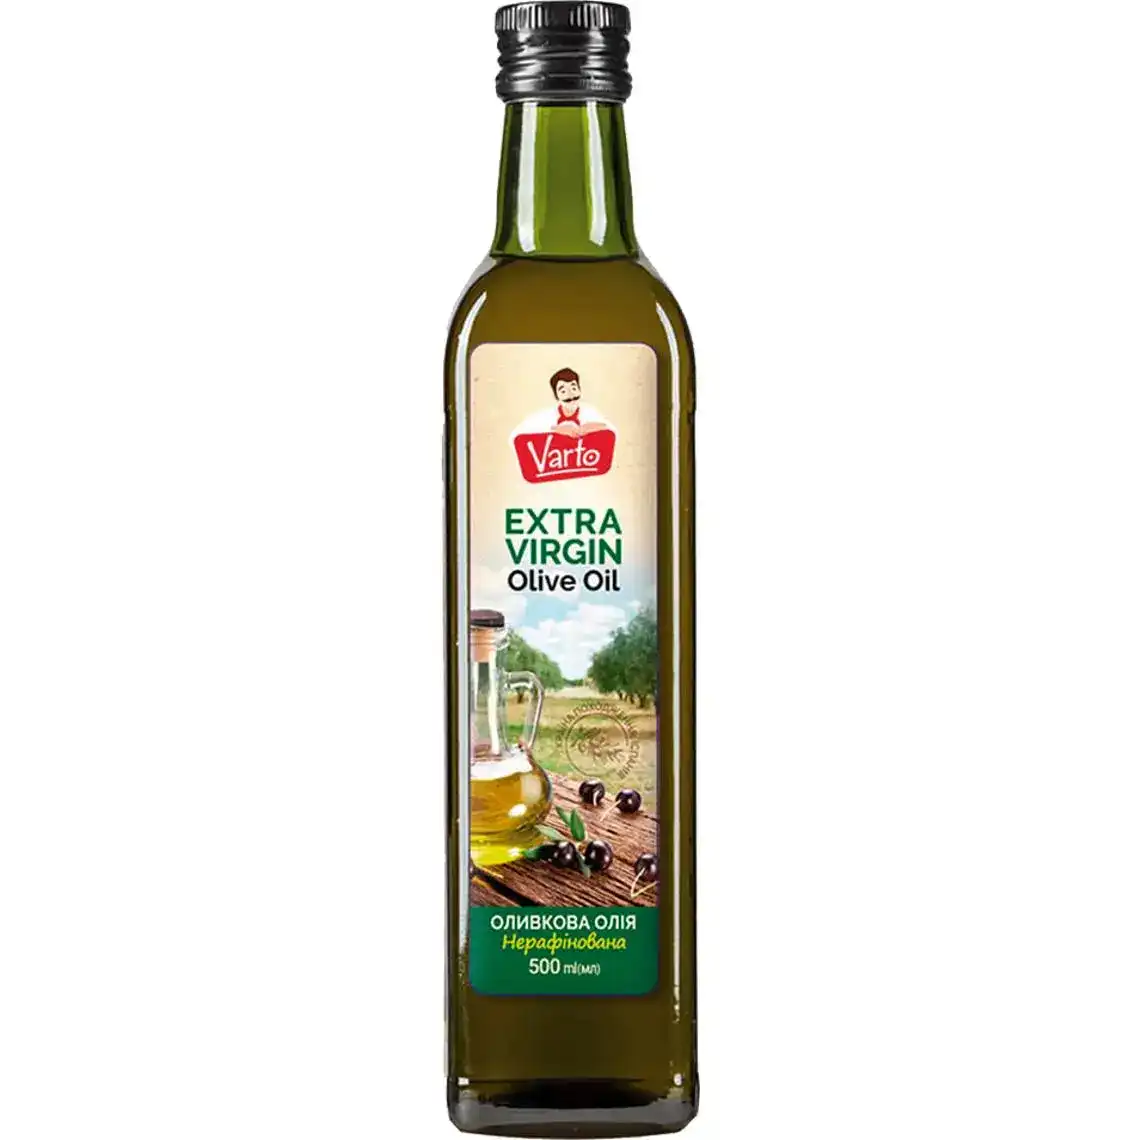 Оливкова олія Varto Extra Virgin нерафінована 500 мл